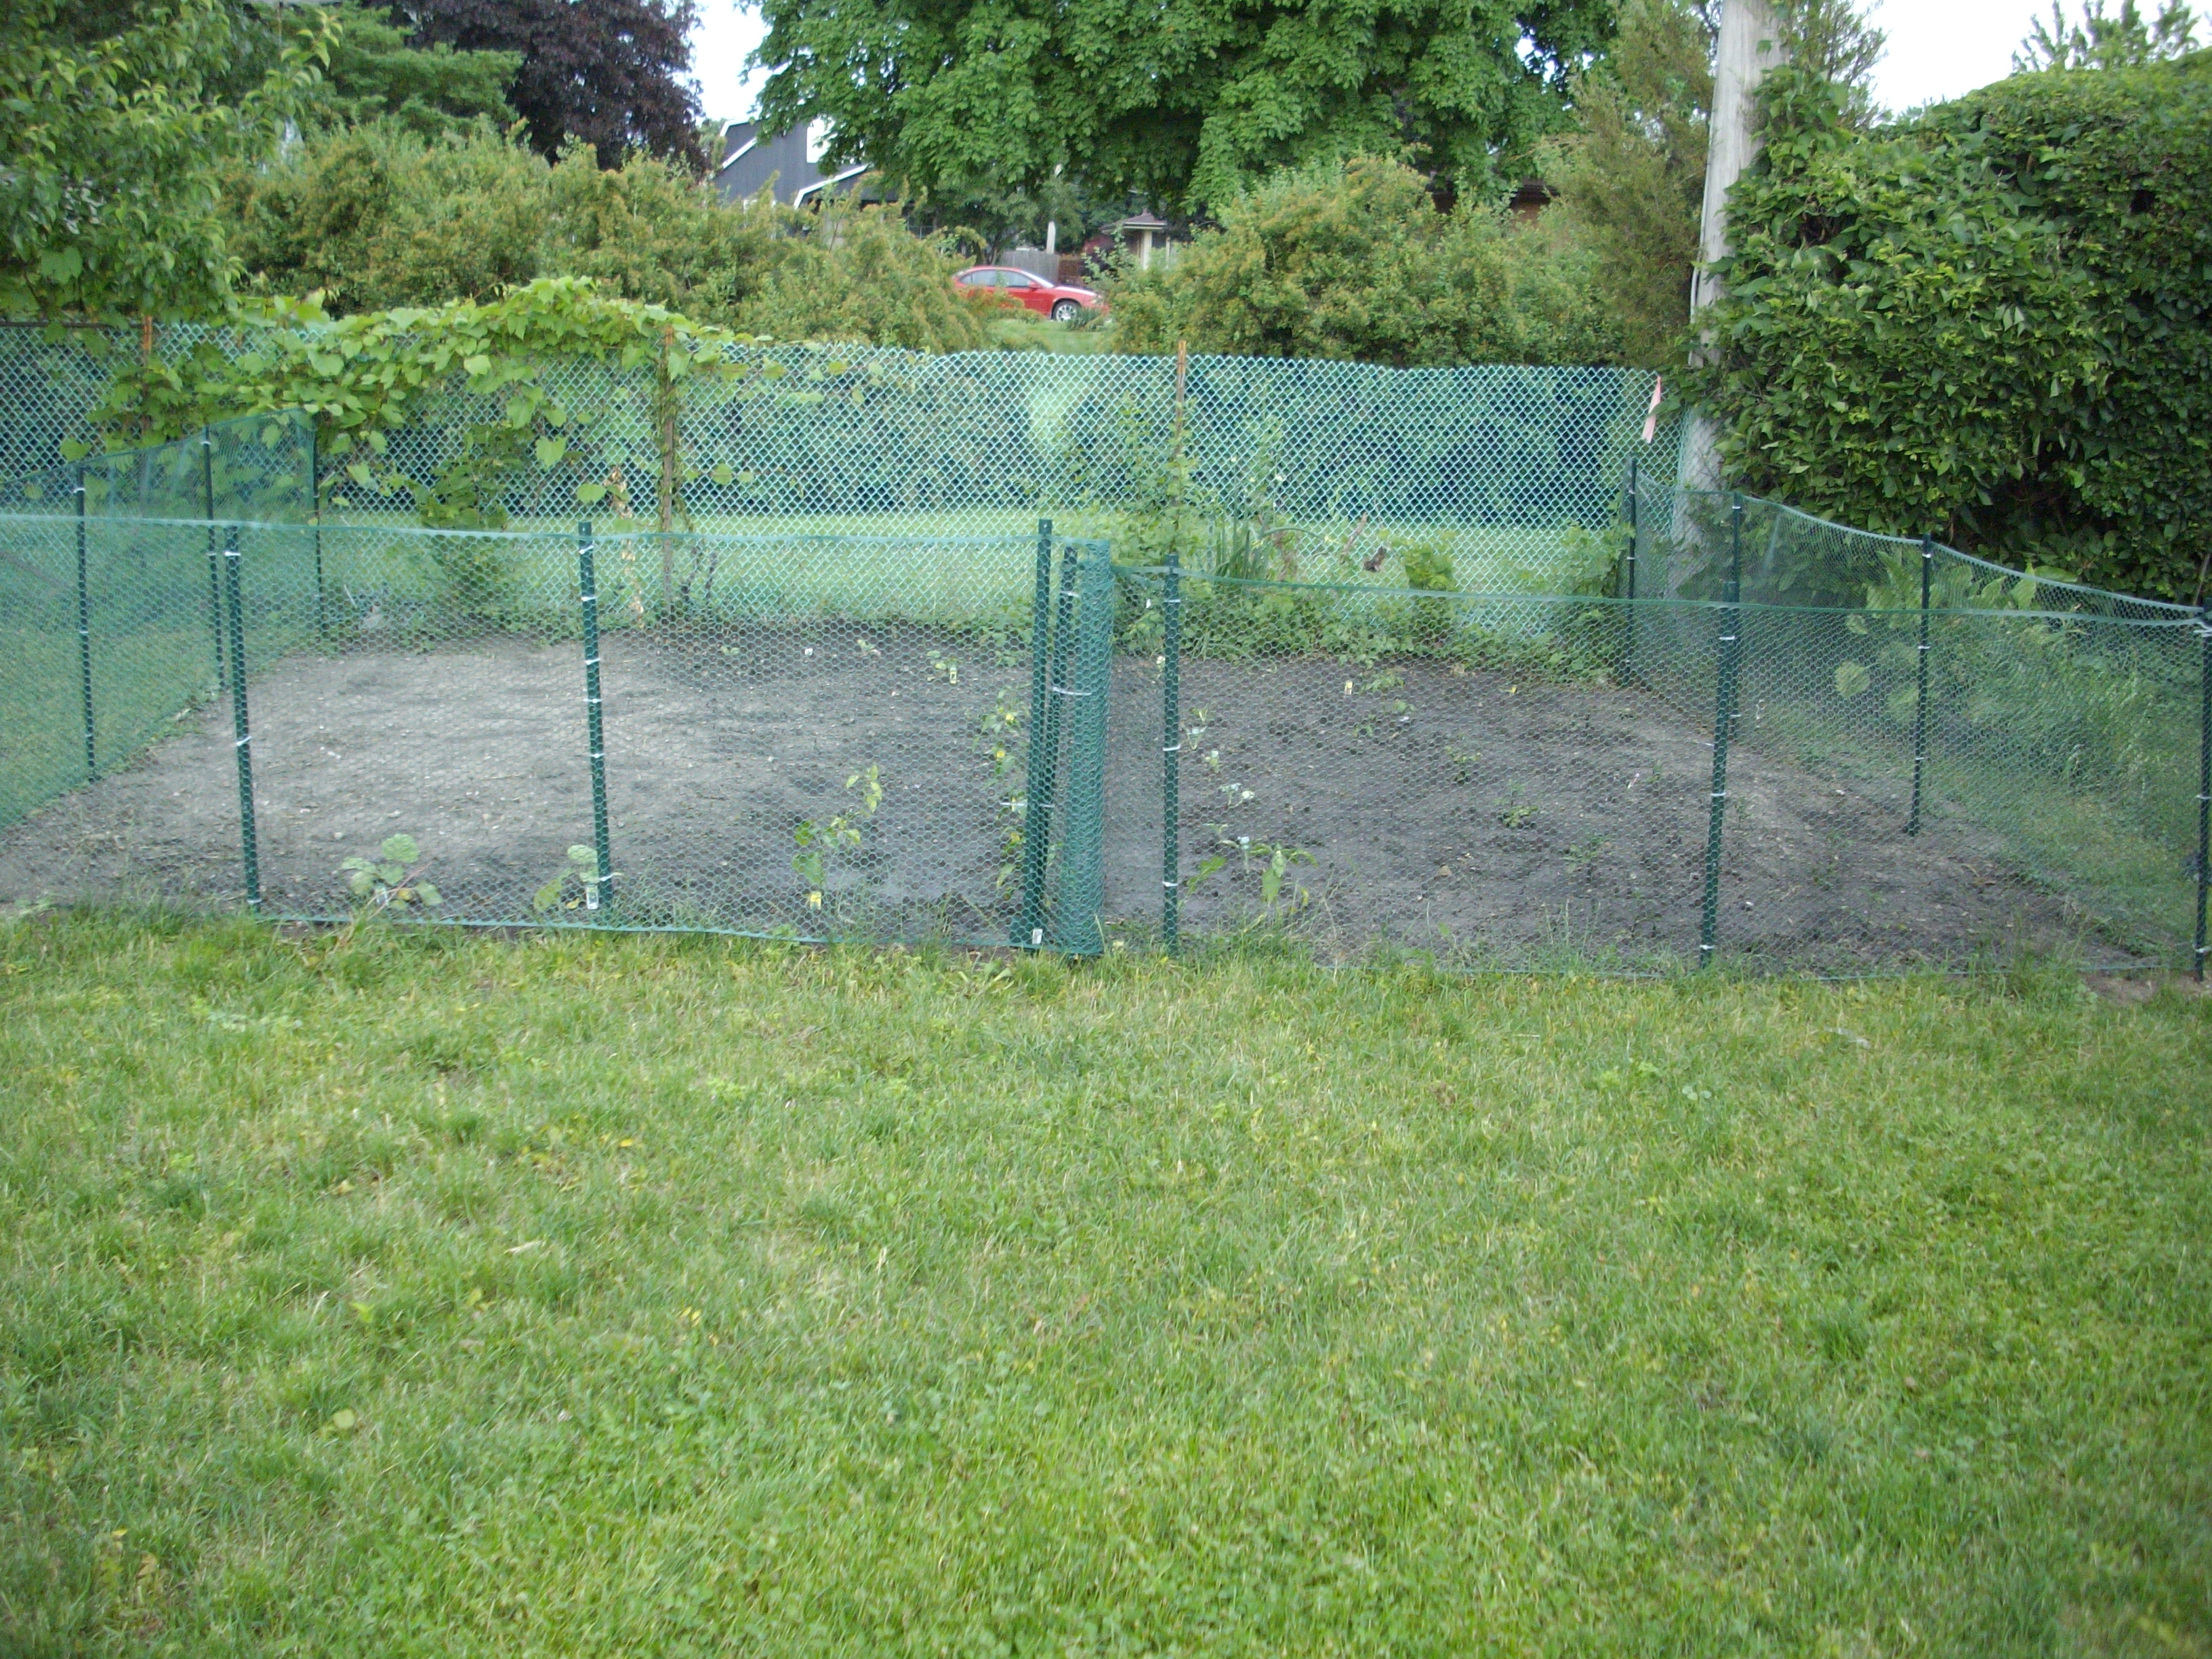 garden fencing ideas do yourself photo - 1